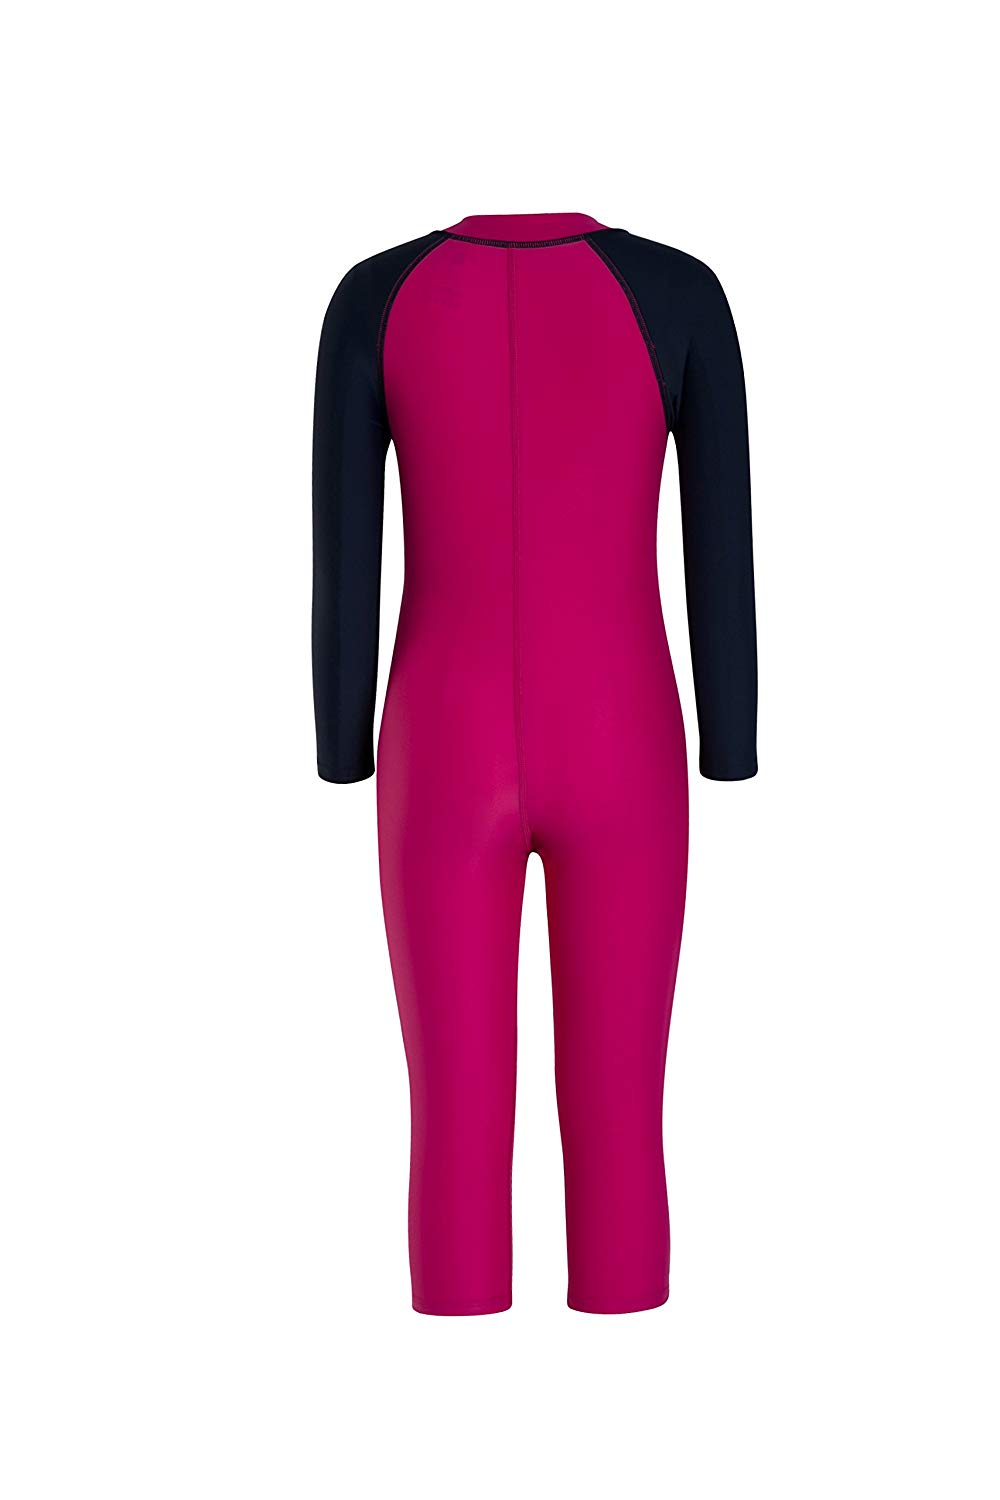 Speedo Tots Swimwear Color Block All-in-1 Suit (Electric Pink/Navy) - Best Price online Prokicksports.com